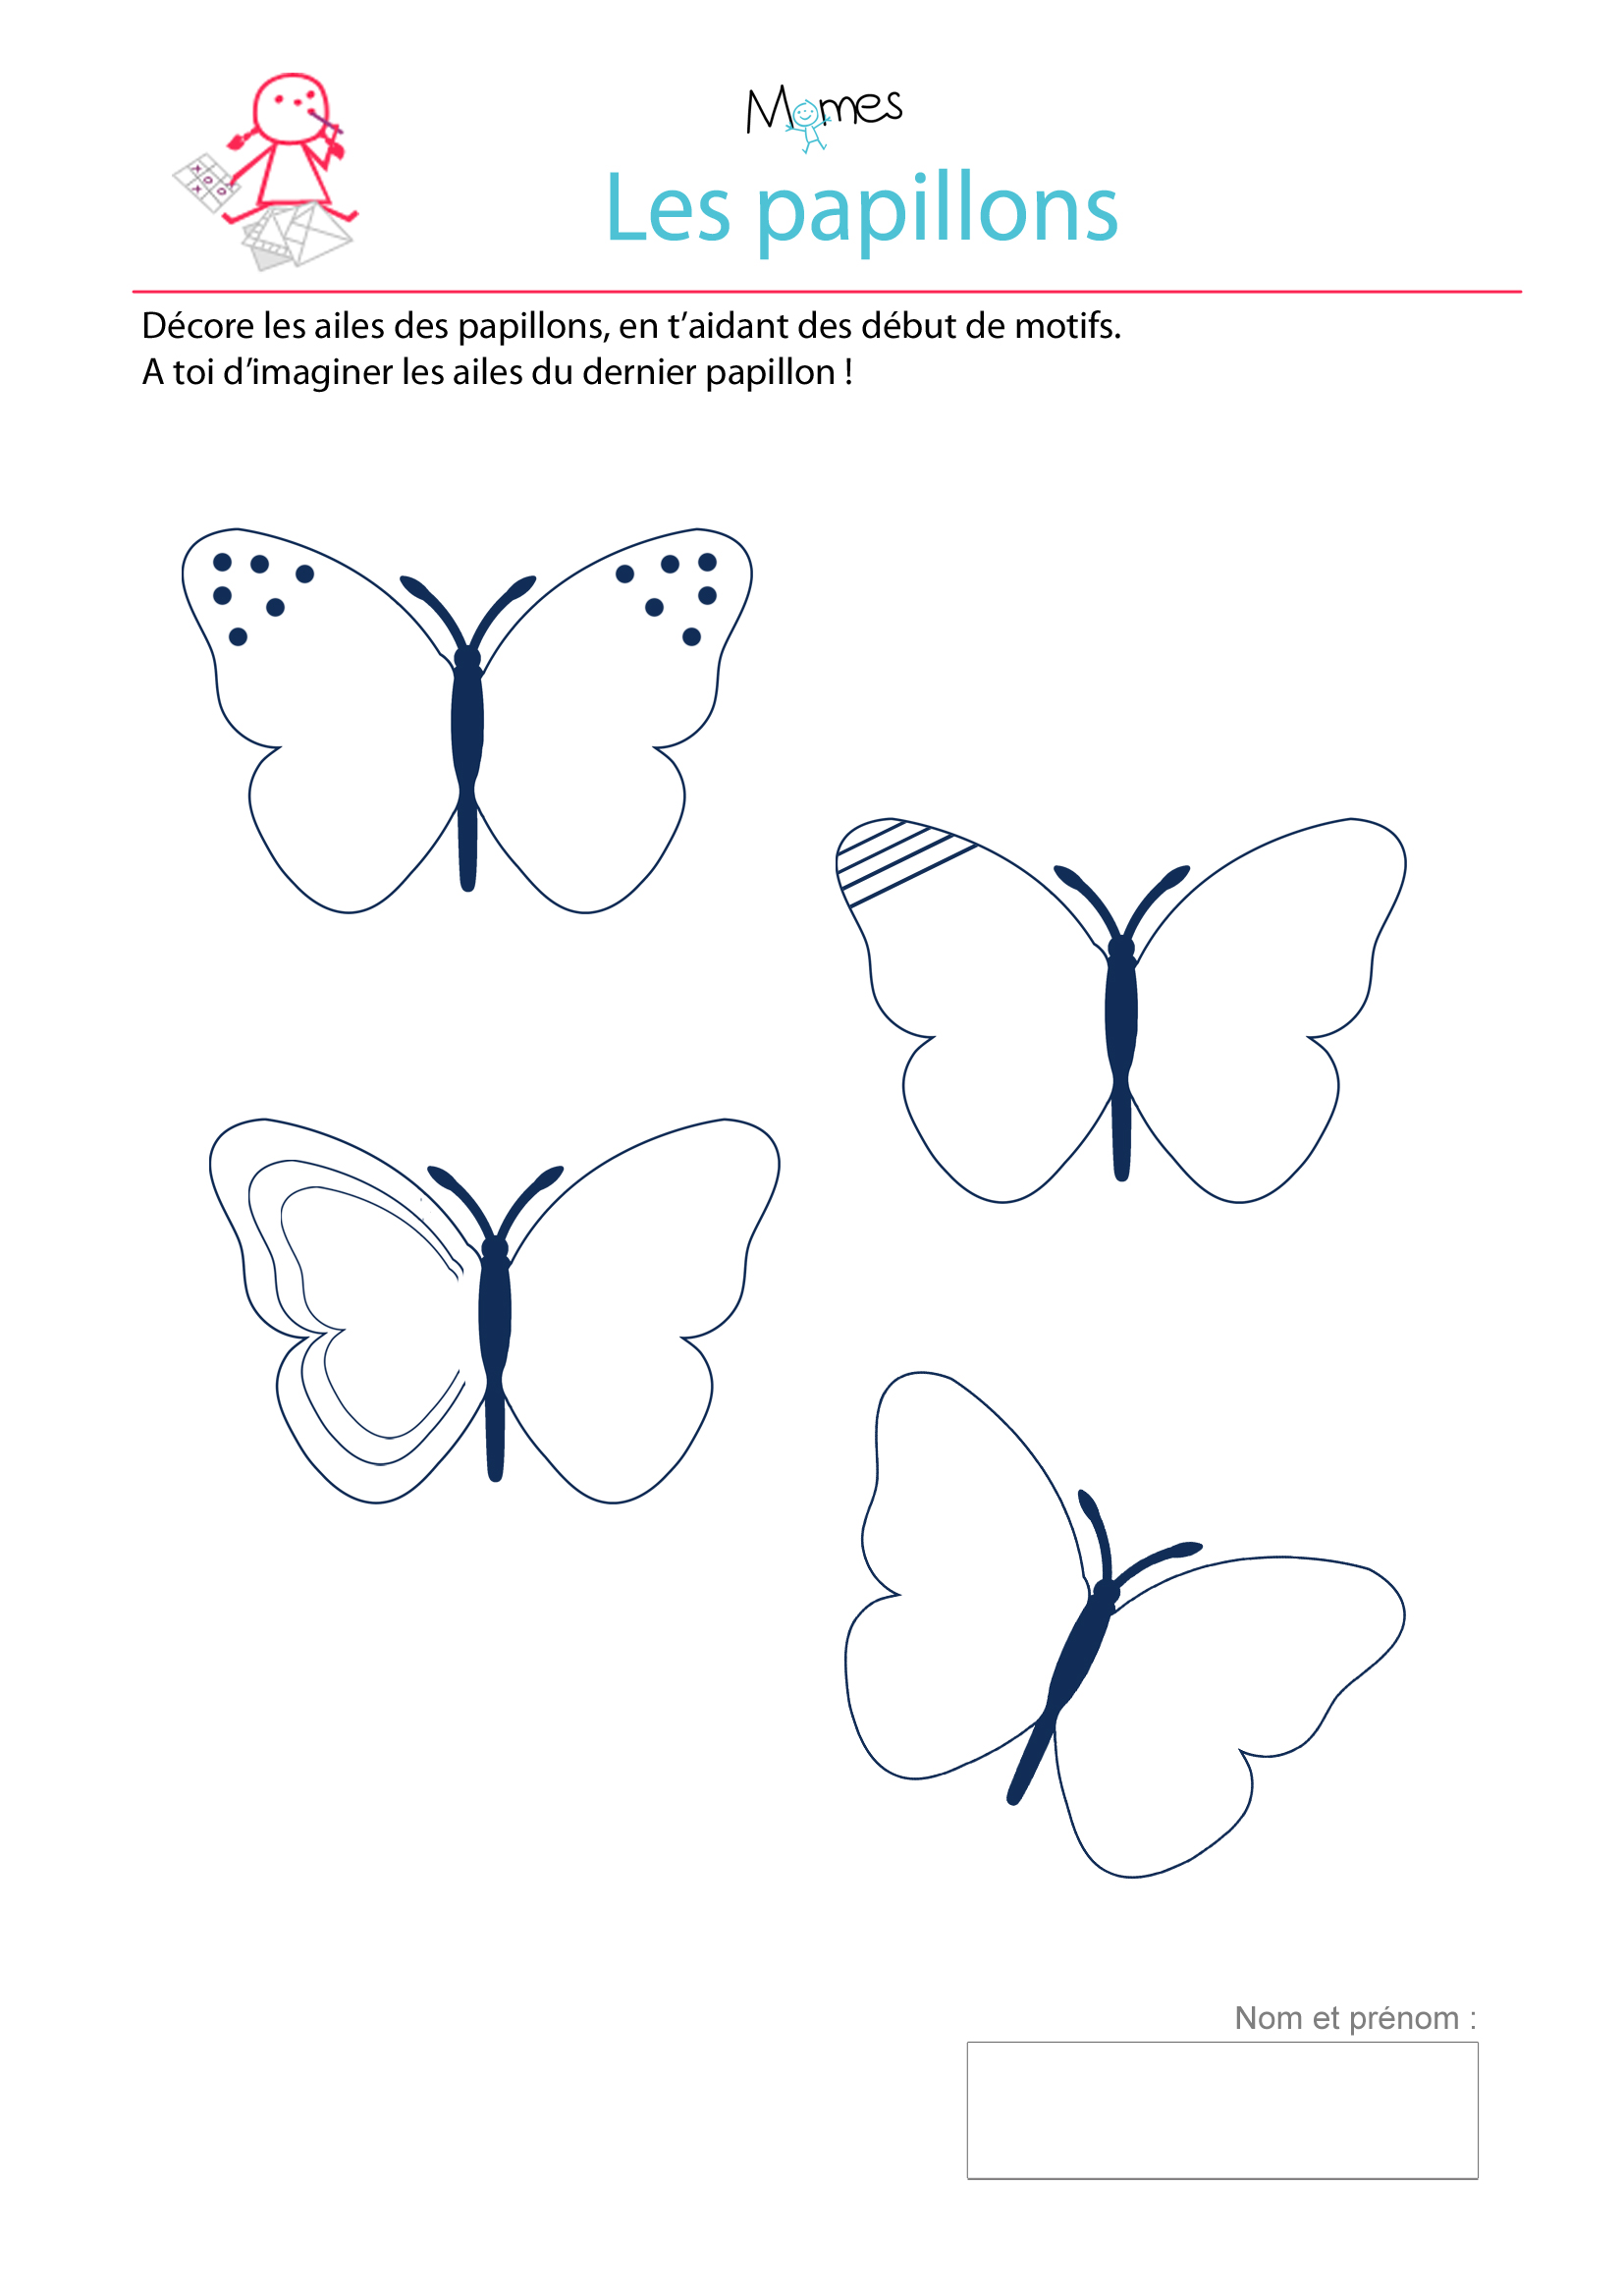 Décore les ailes de Papillons - exercice à imprimer